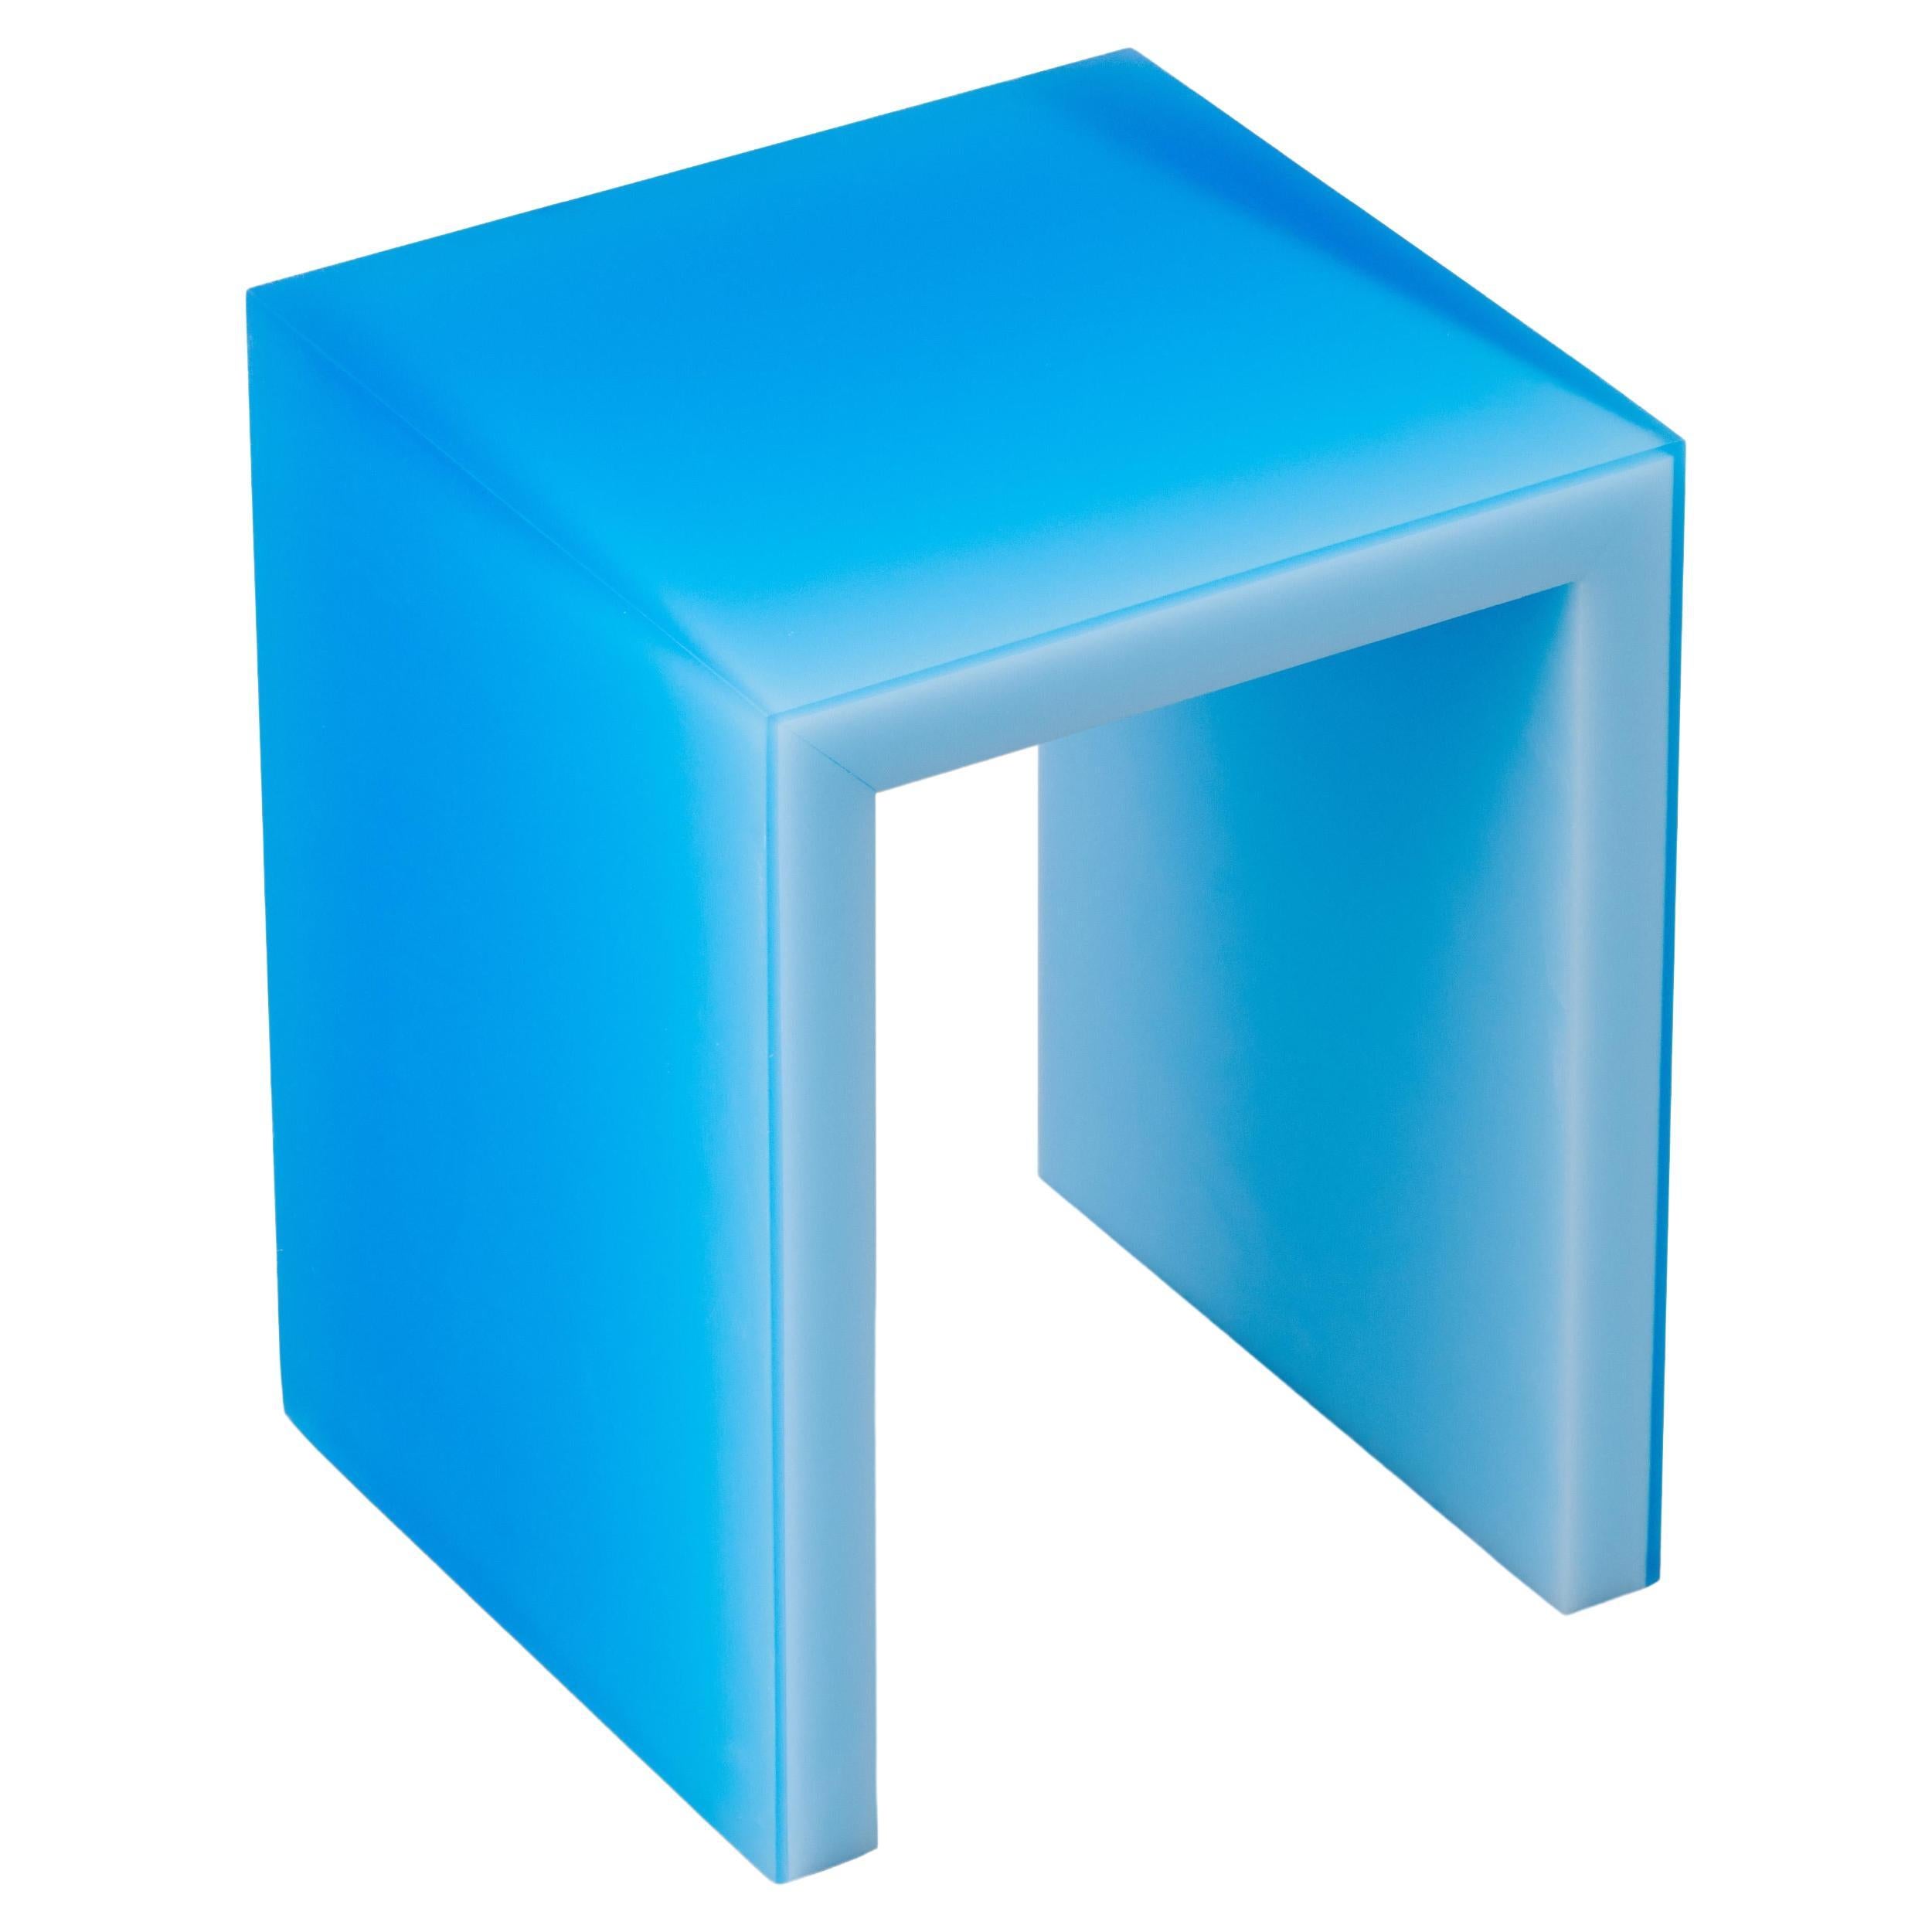 Table d'appoint/tabouret en résine droite pure bleue par Facture, REP par Tuleste Factory